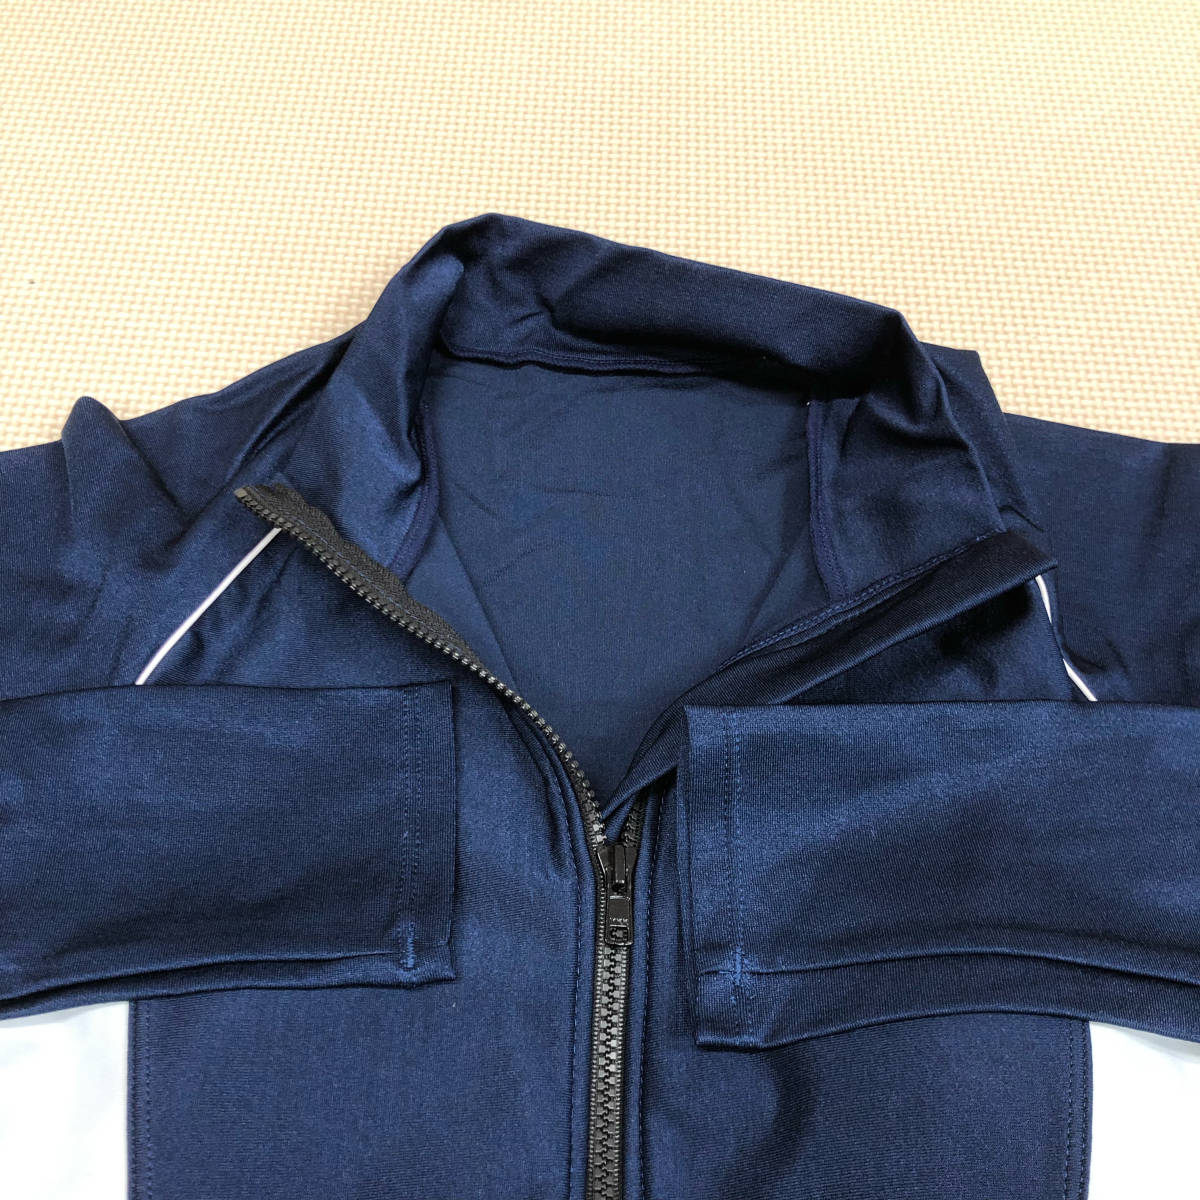 ( новый товар ) купальный костюм [SW-065A-901]A темно-синий ×si- белый / плавание рубашка / накладка есть /REDSWALOW/ сделано в Японии /.. купальный костюм / купальный костюм / плавание ../